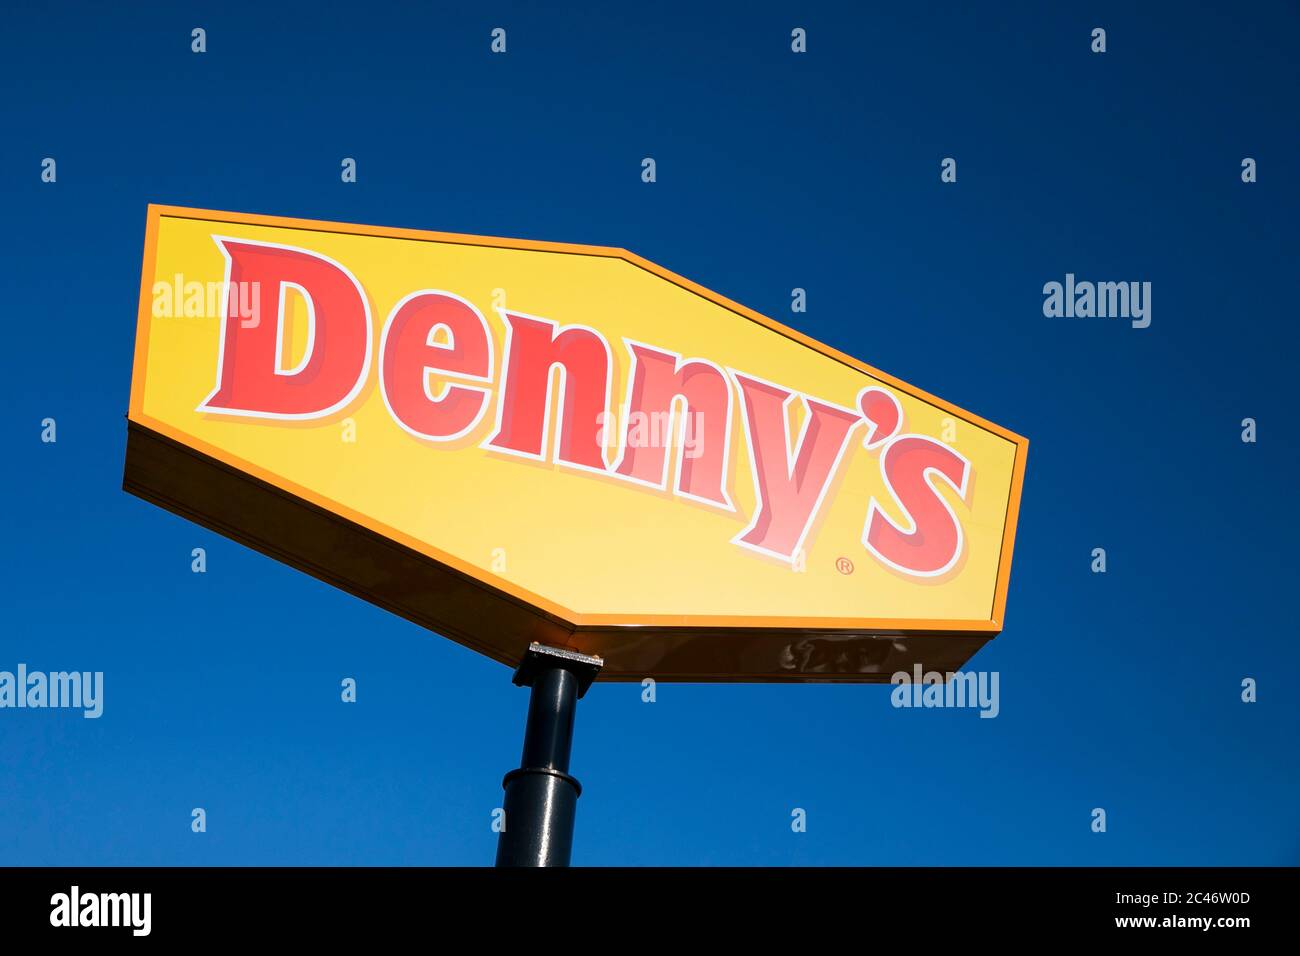 Un logo à l'extérieur d'un restaurant Denny's situé à Hanovre, en Pennsylvanie, le 12 juin 2020. Banque D'Images